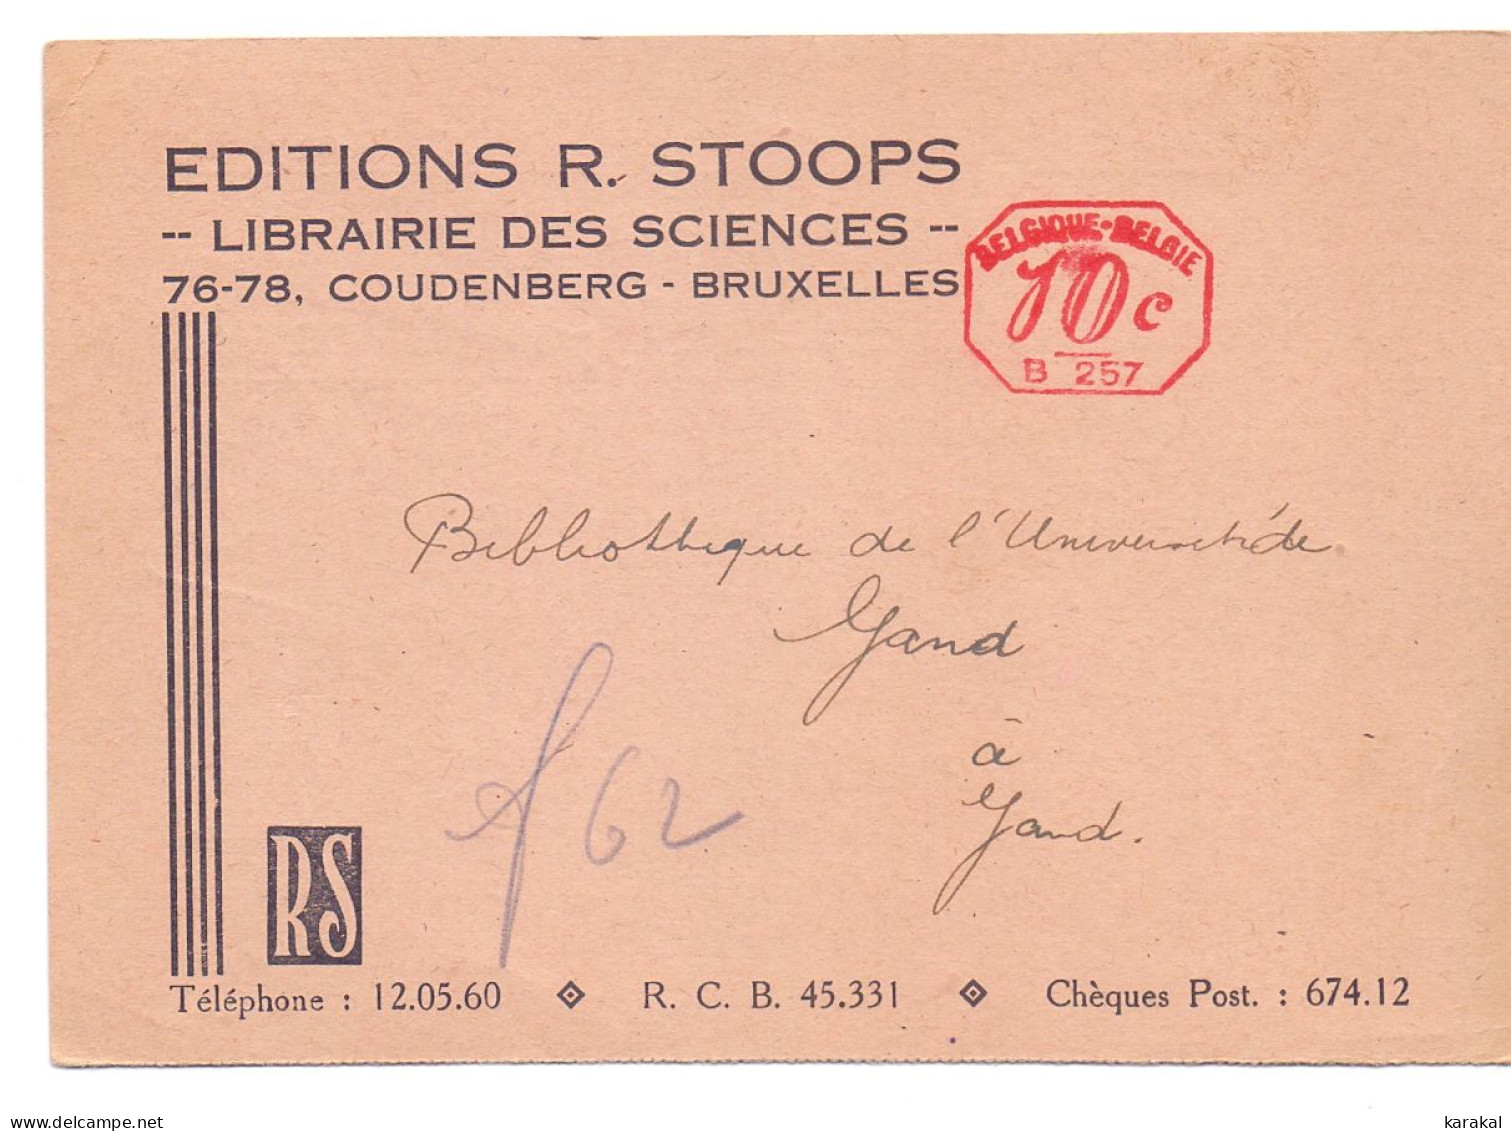 Carte-postale Editions R. Stoops Librairie Des Sciences Empreinte Machine B257 Bruxelles Coudenberg - ...-1959